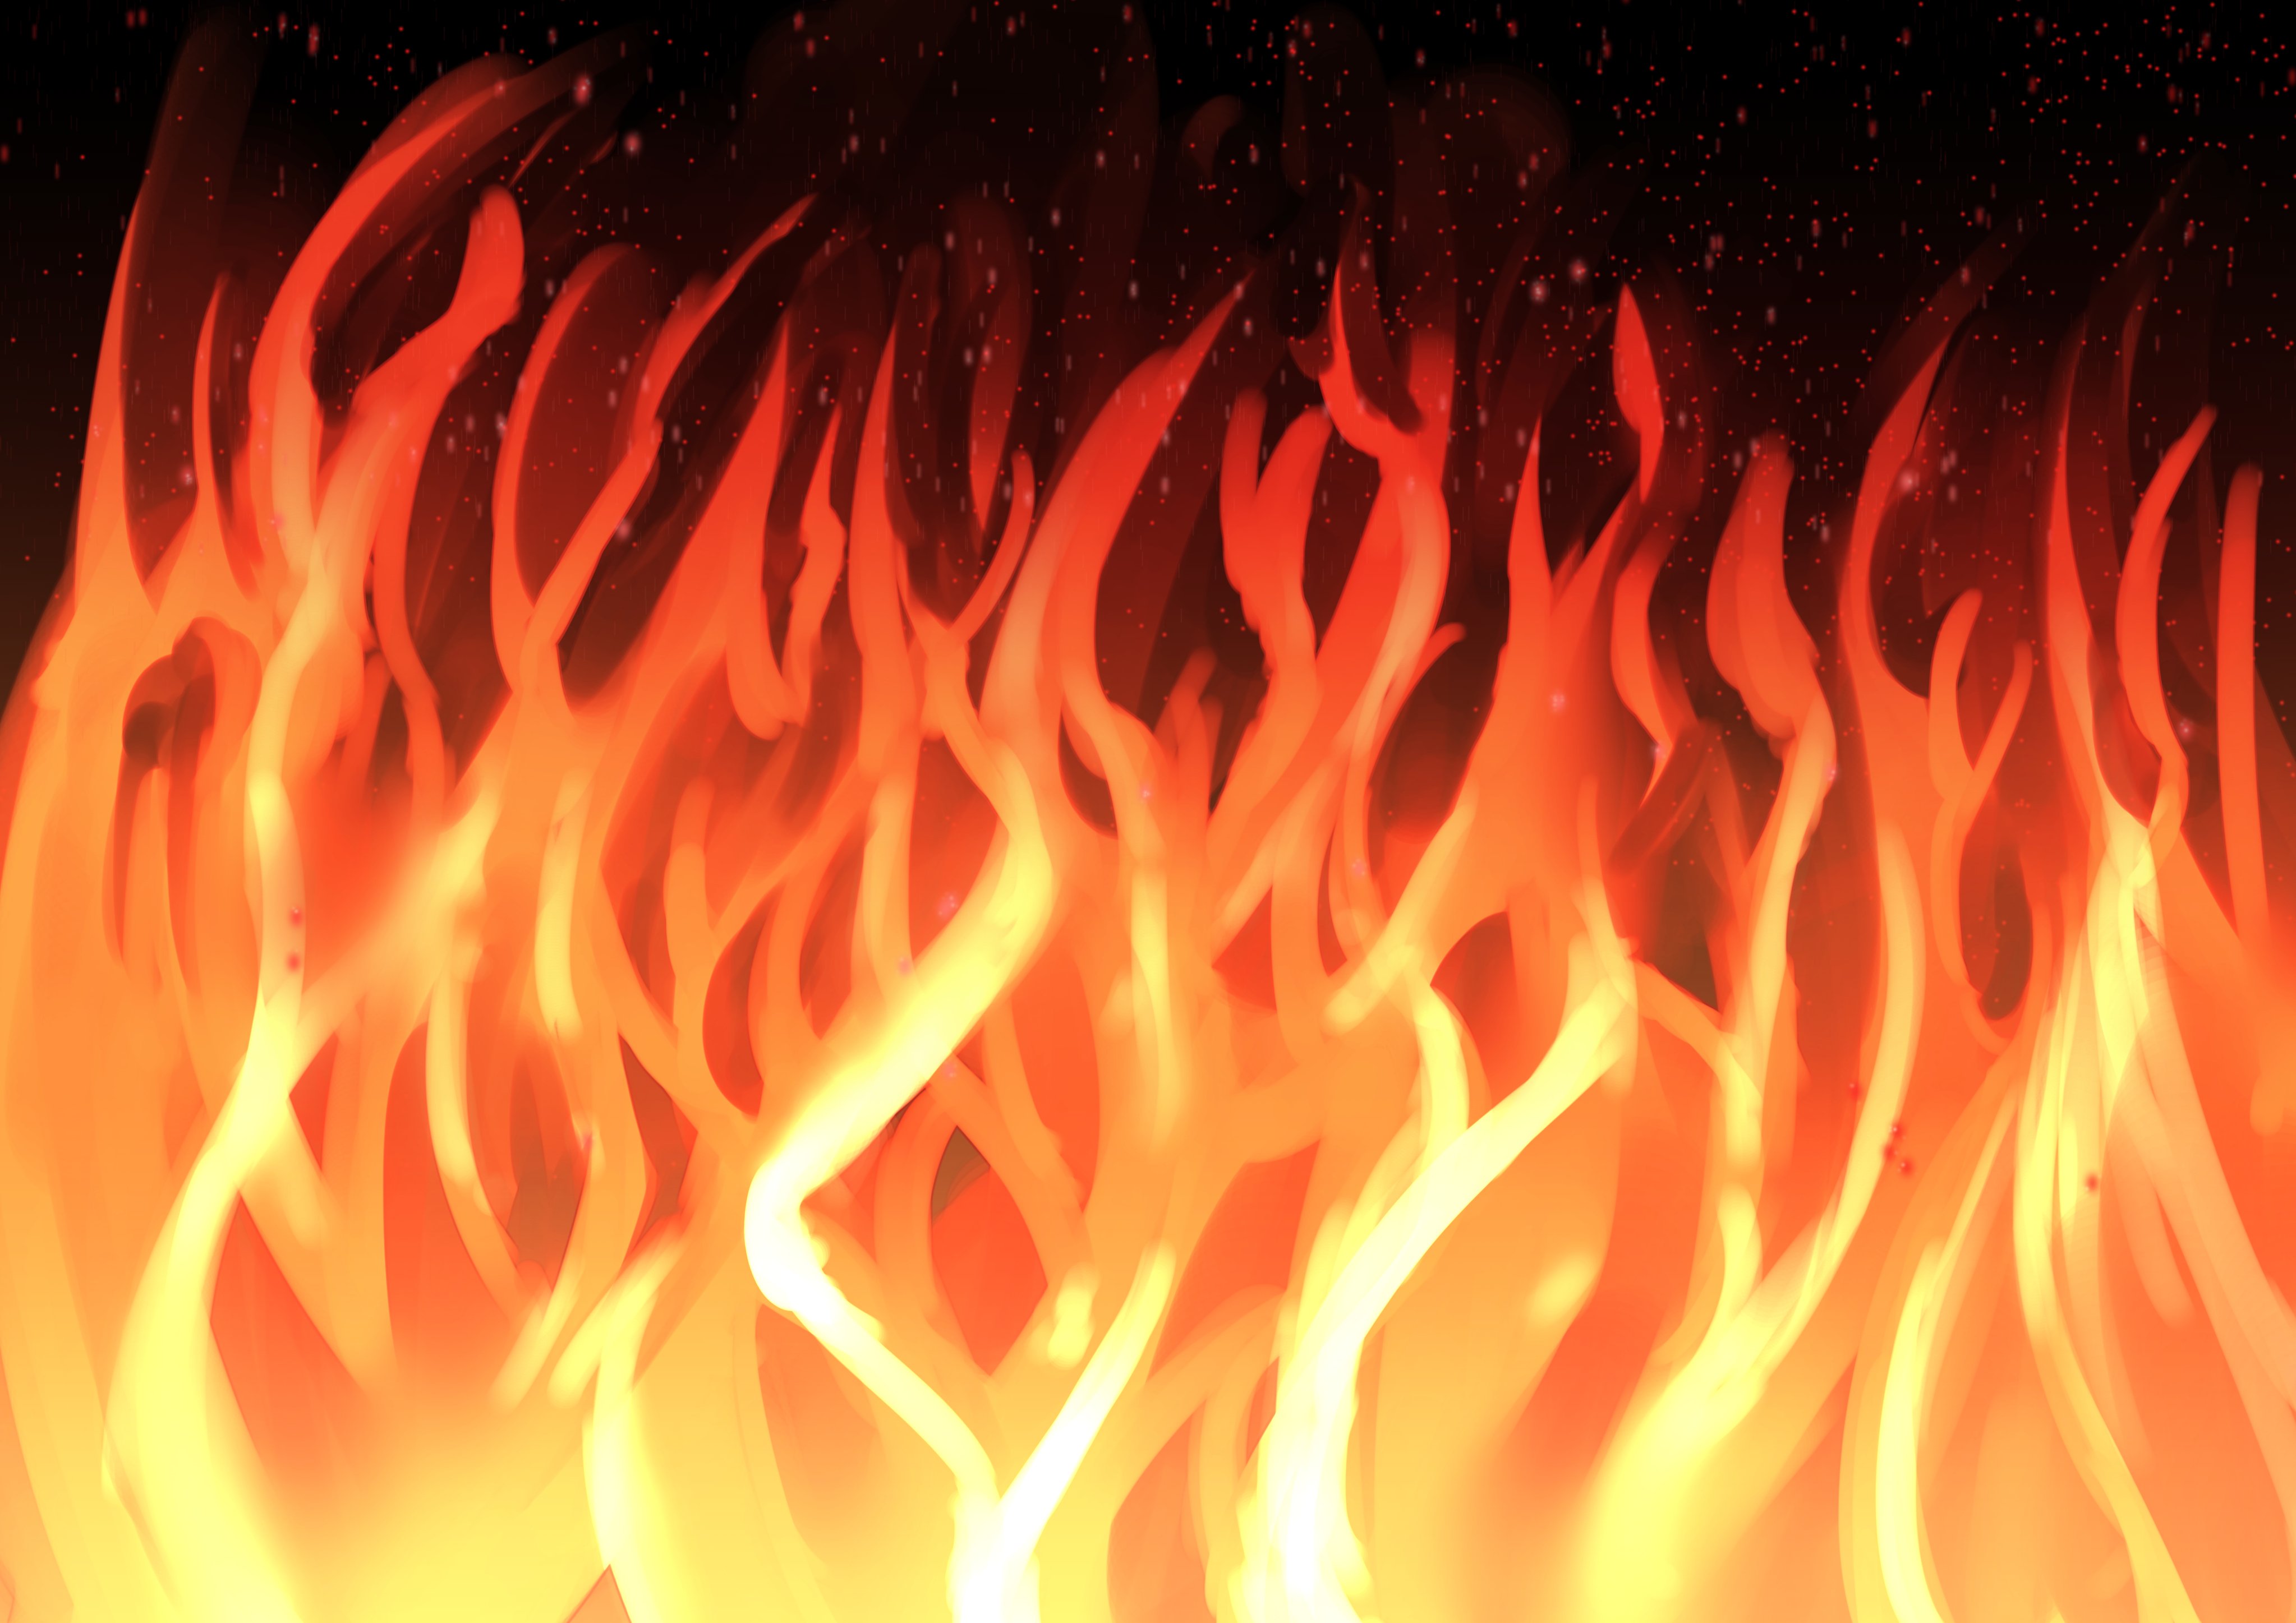 マオ 炎のエフェクトを描きました フリー素材です よろしければ使ってやってください 炎 エフェクト フリー素材 オリジナル イラスト Fire Effects T Co Lsgztka1ot Twitter